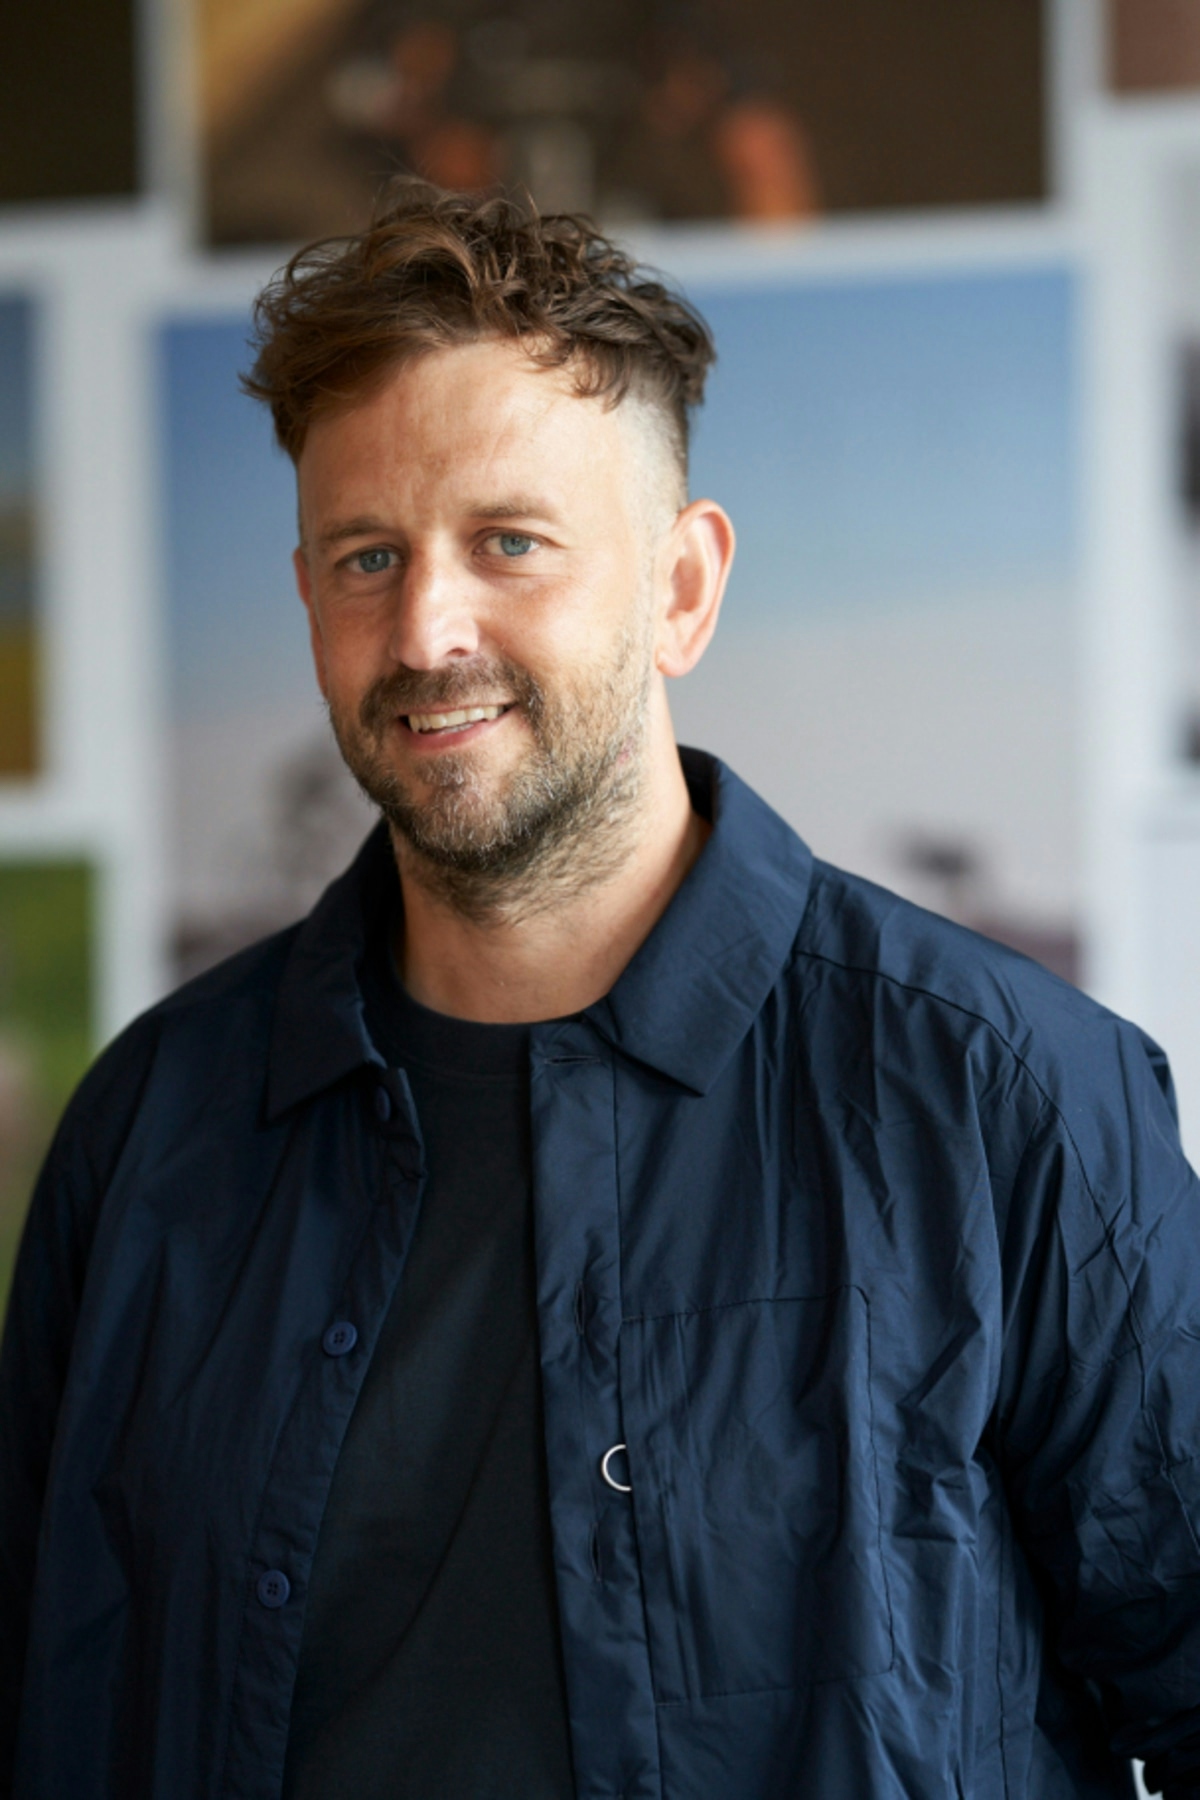 Dan Blumire – Co-Managing Director